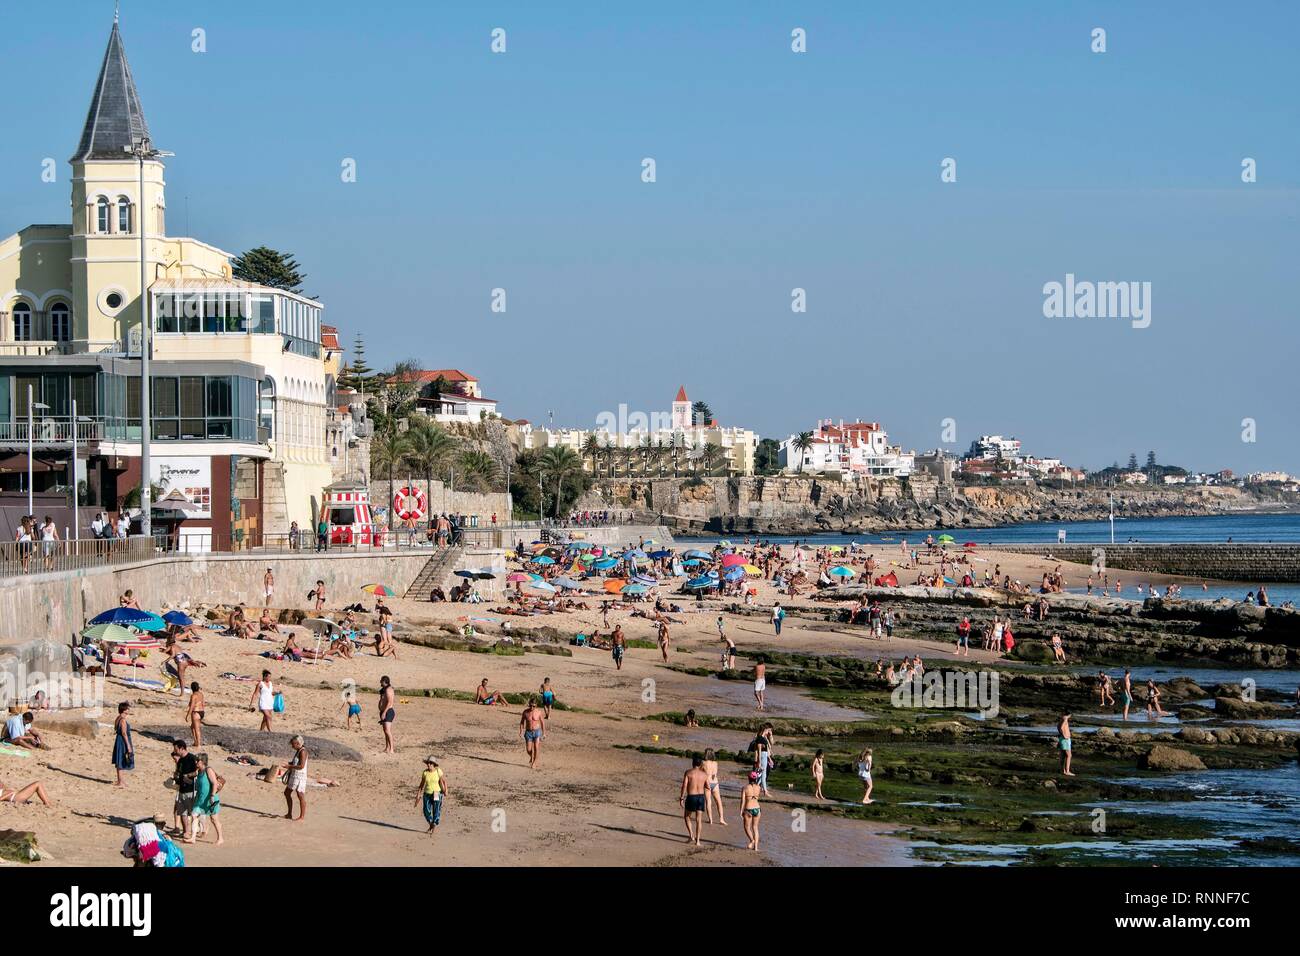 Promenade et plage de la ville côtière, Estoril, Portugal Banque D'Images